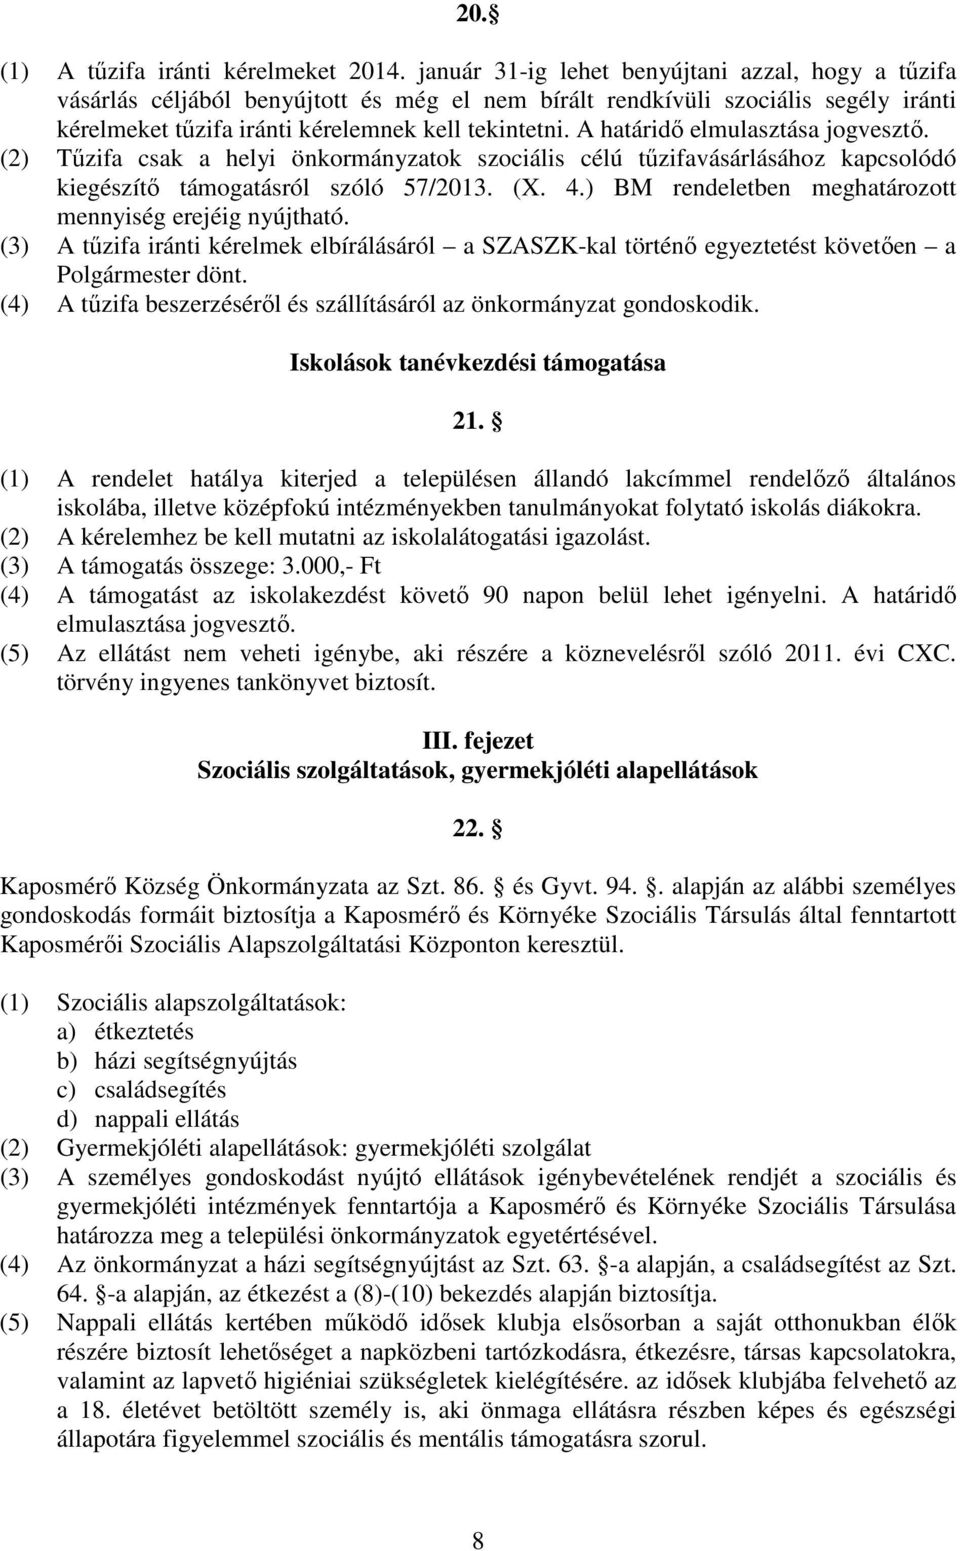 A határidı elmulasztása jogvesztı. (2) Tőzifa csak a helyi önkormányzatok szociális célú tőzifavásárlásához kapcsolódó kiegészítı támogatásról szóló 57/2013. (X. 4.